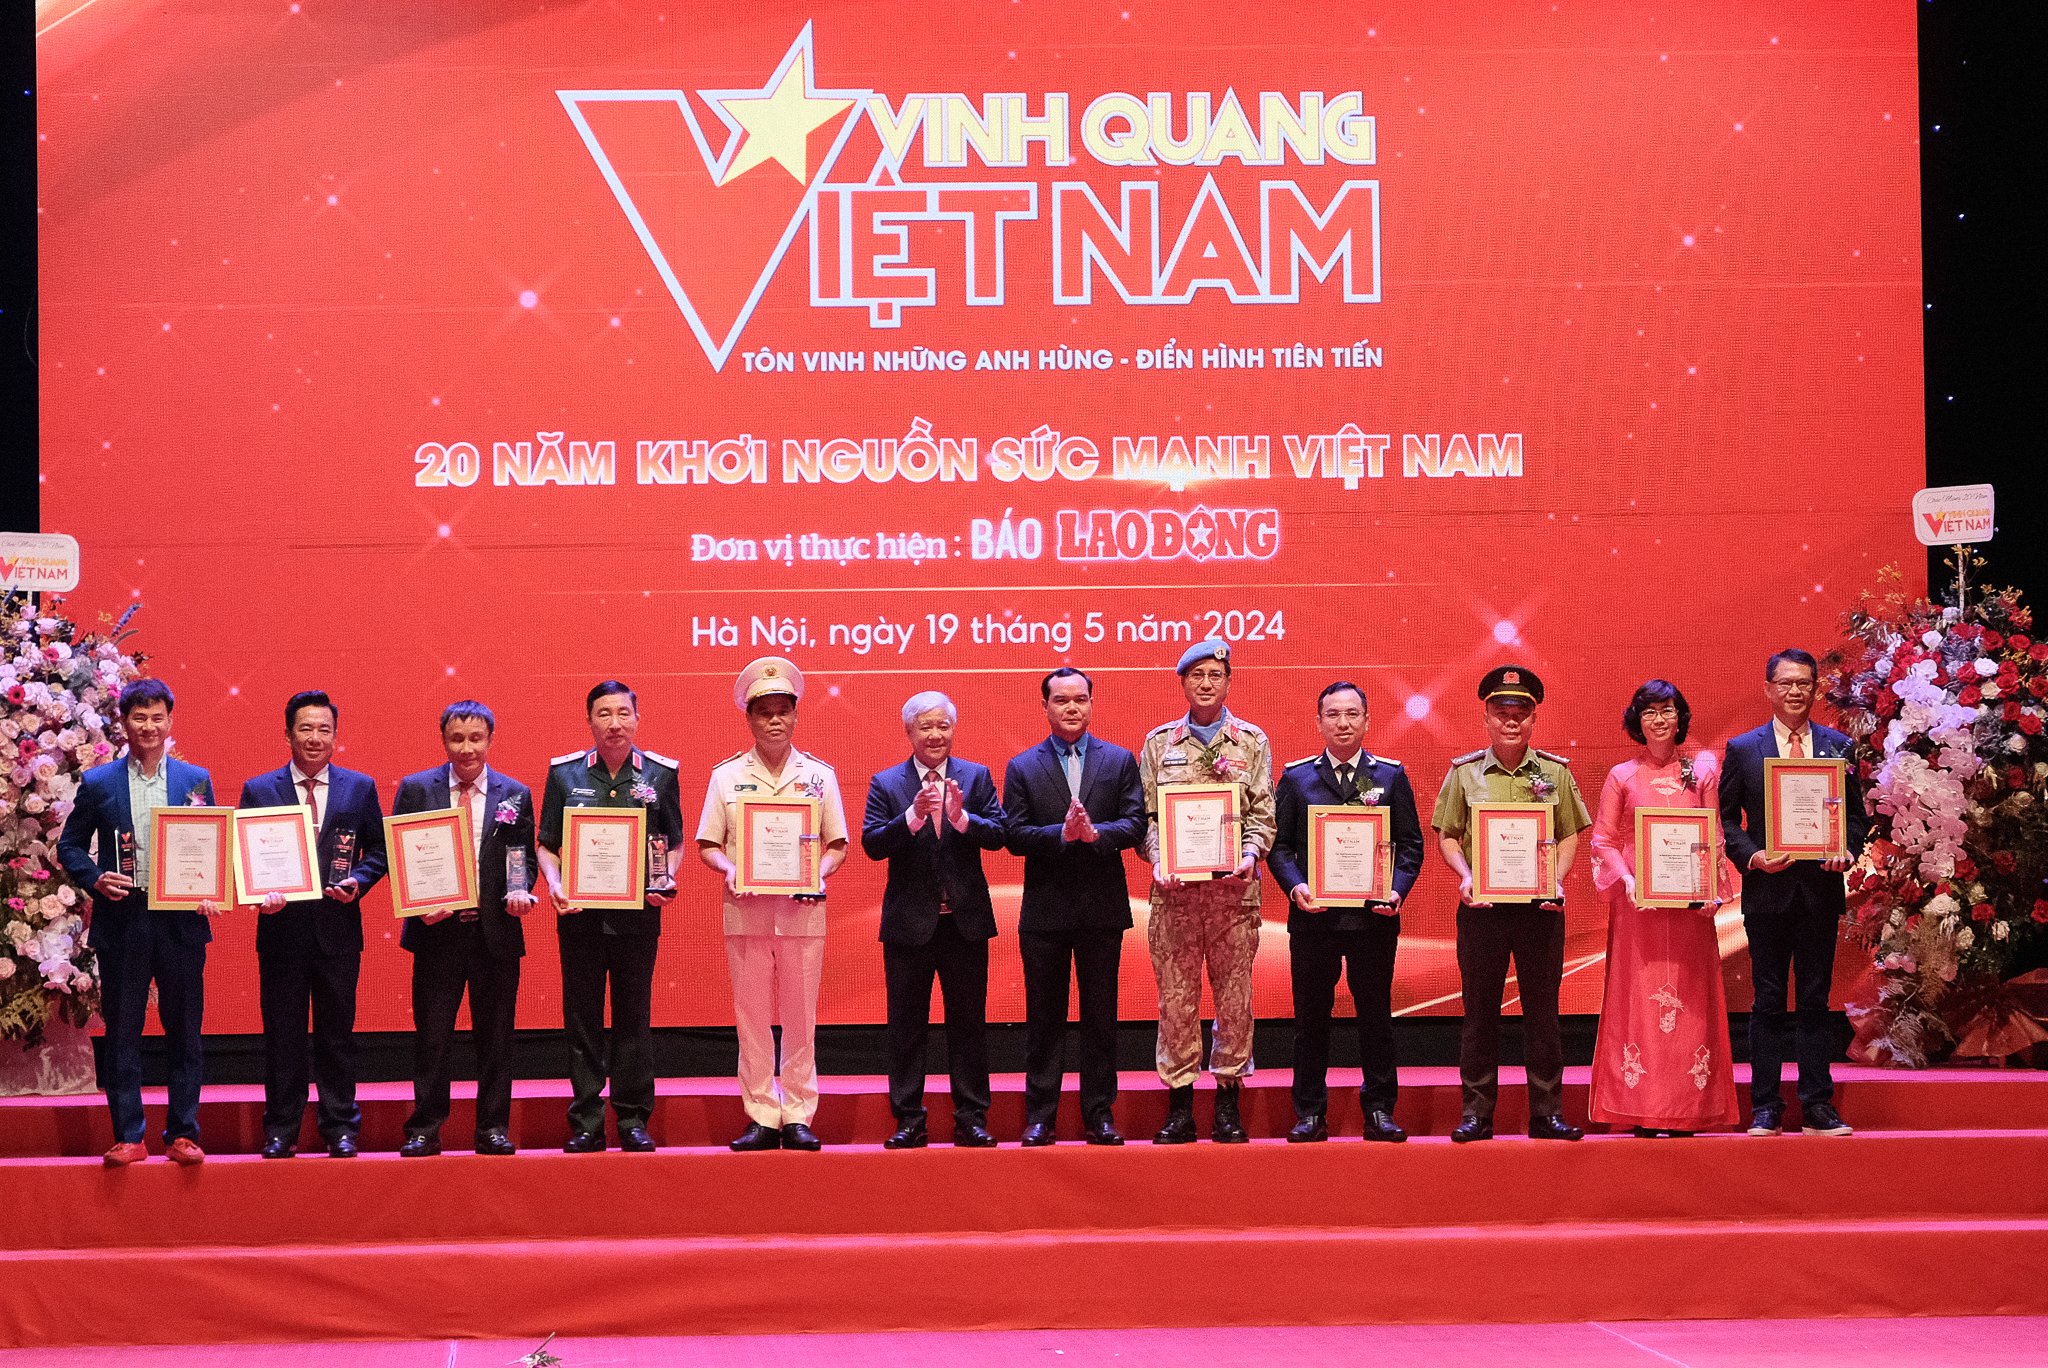 Một Vườn Quốc gia được tôn vinh tại Chương trình "Vinh quang Việt Nam" tổ chức tại Hà Nội- Ảnh 1.